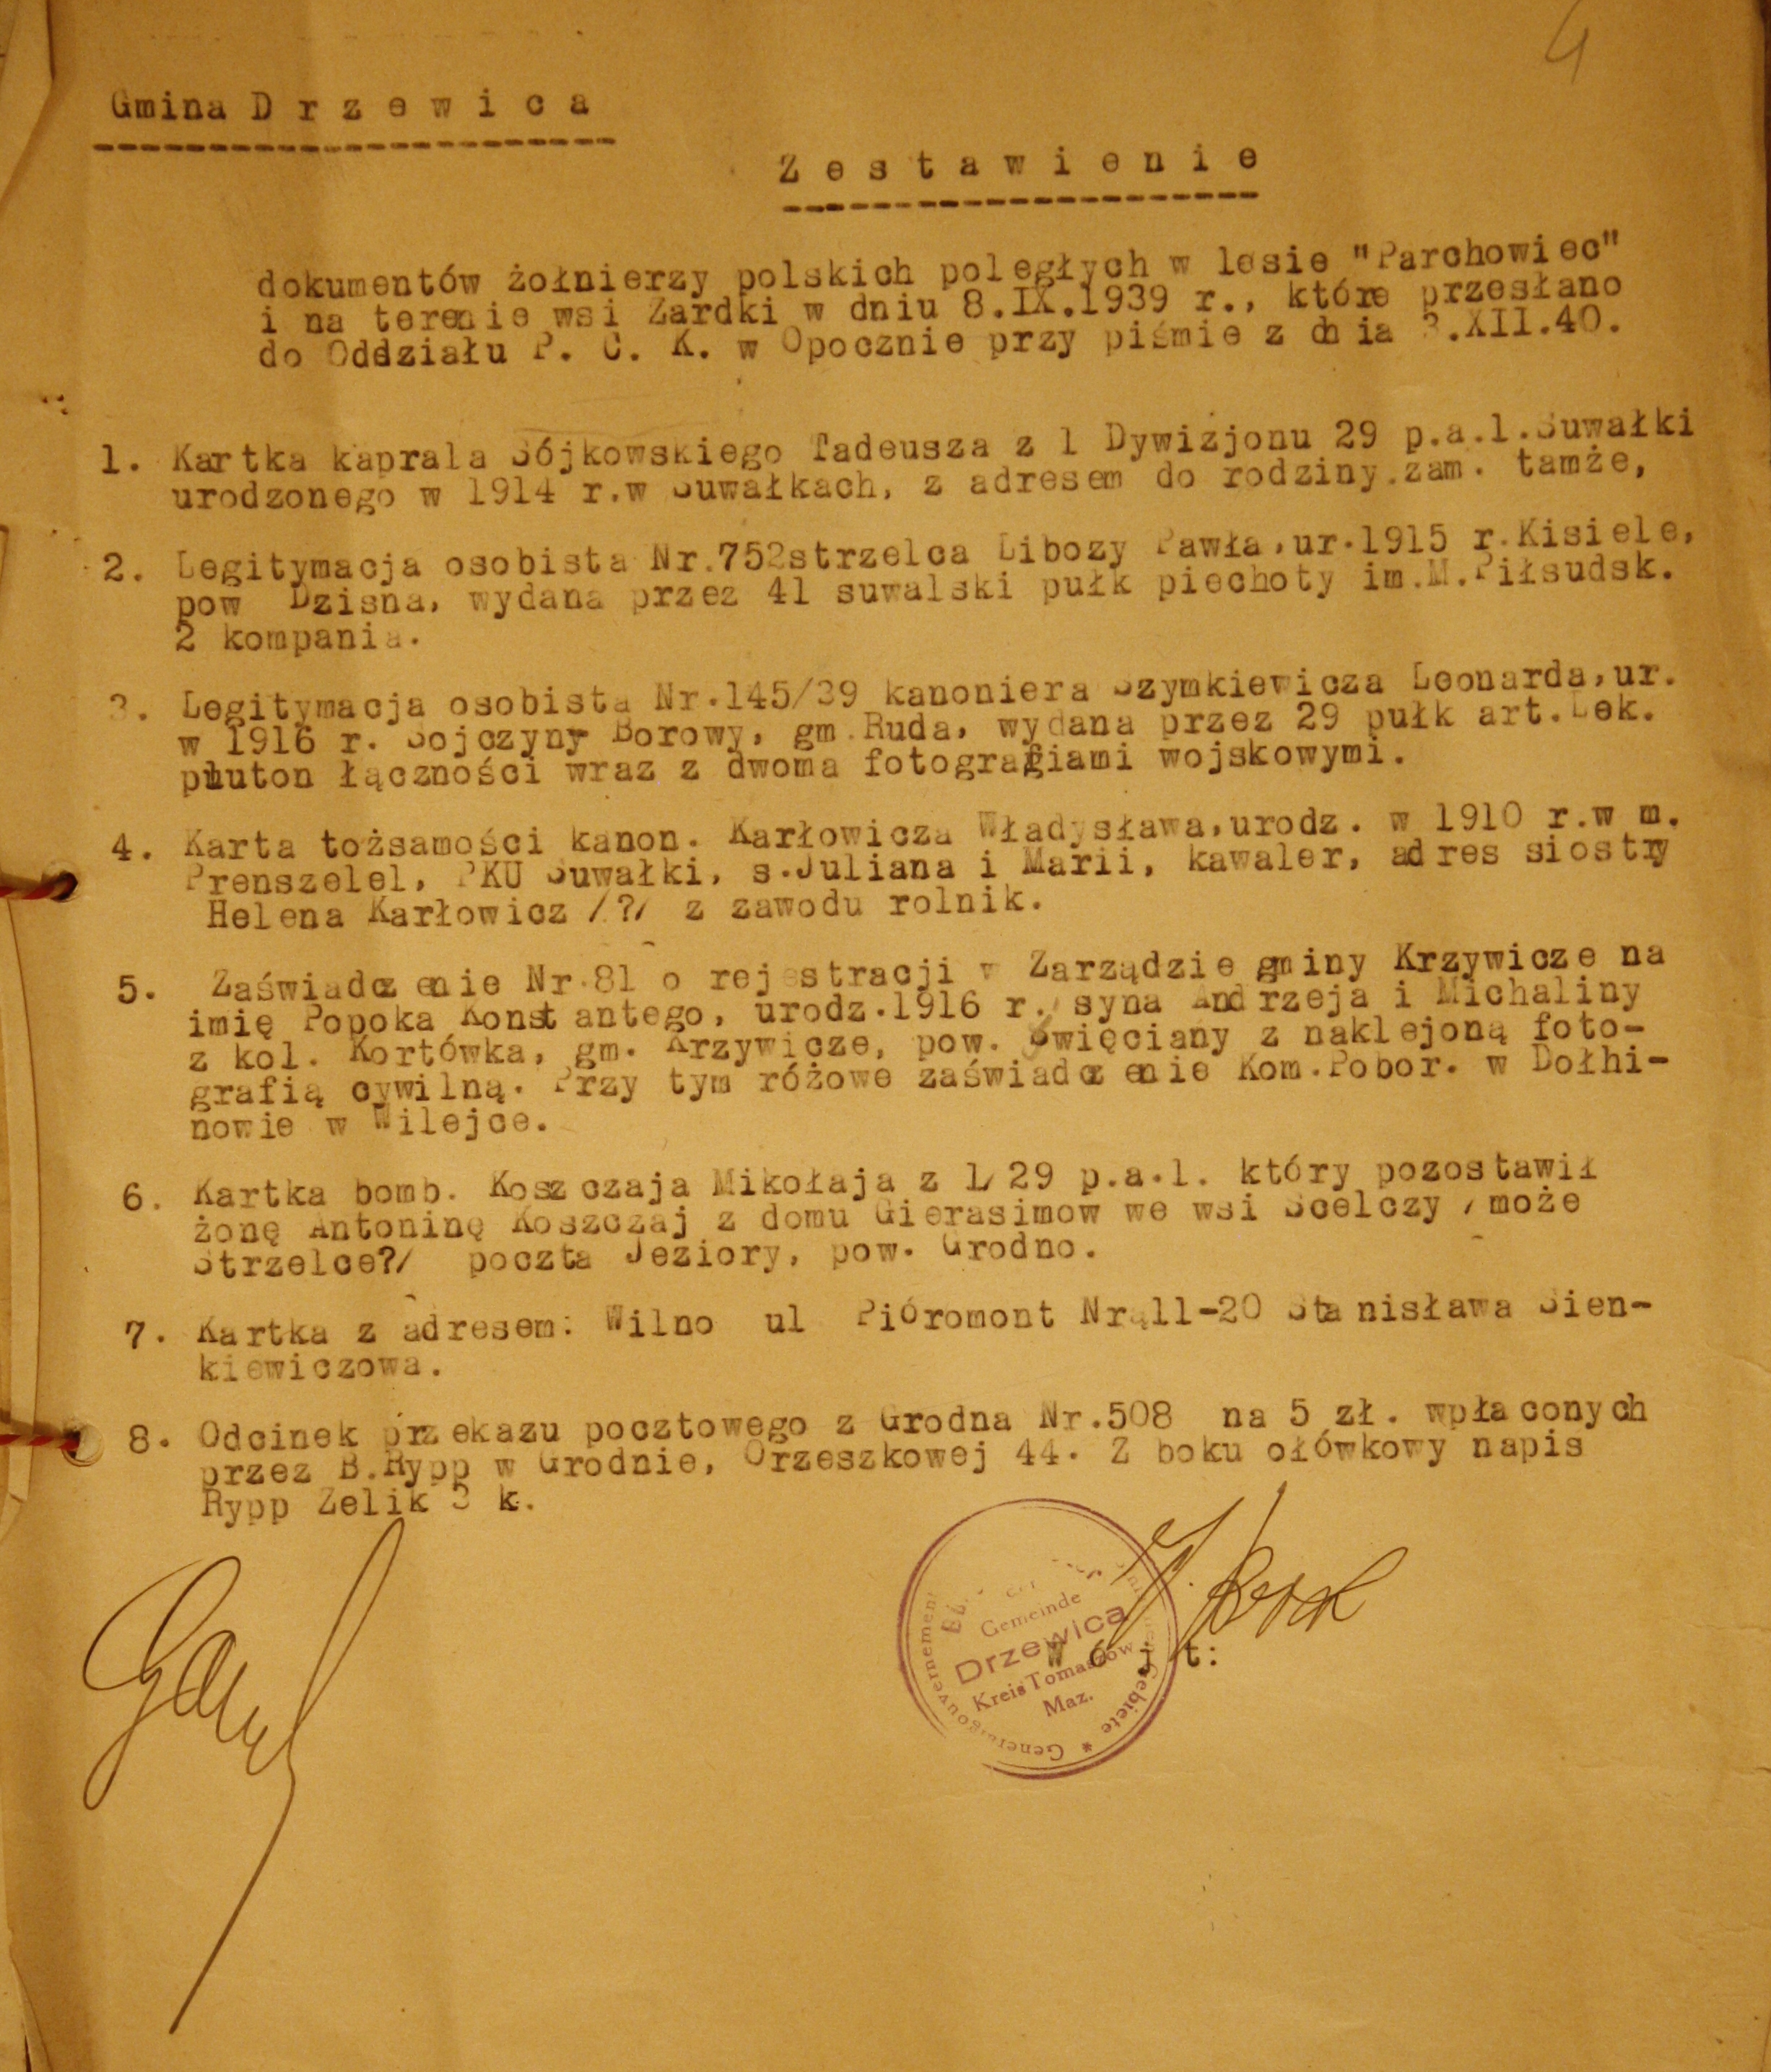 Lista dokumentów żołnierzy polskich poległych w dniu 8 września 1939 r. podczas walk w okolicach Drzewicy.